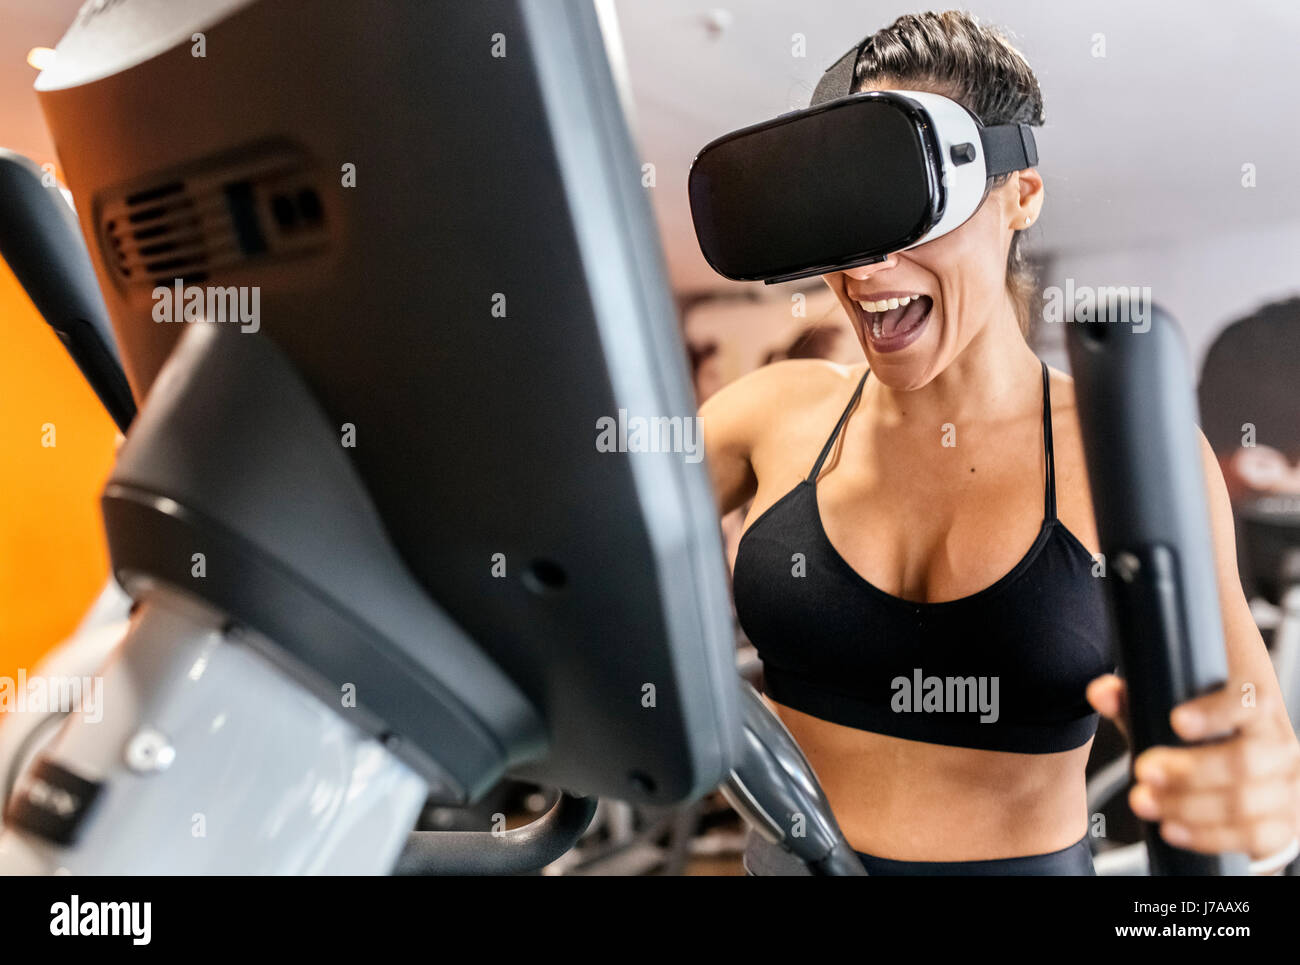 Frau mit VR-Brille auf eine elliptische Traine in der Turnhalle Stockfoto